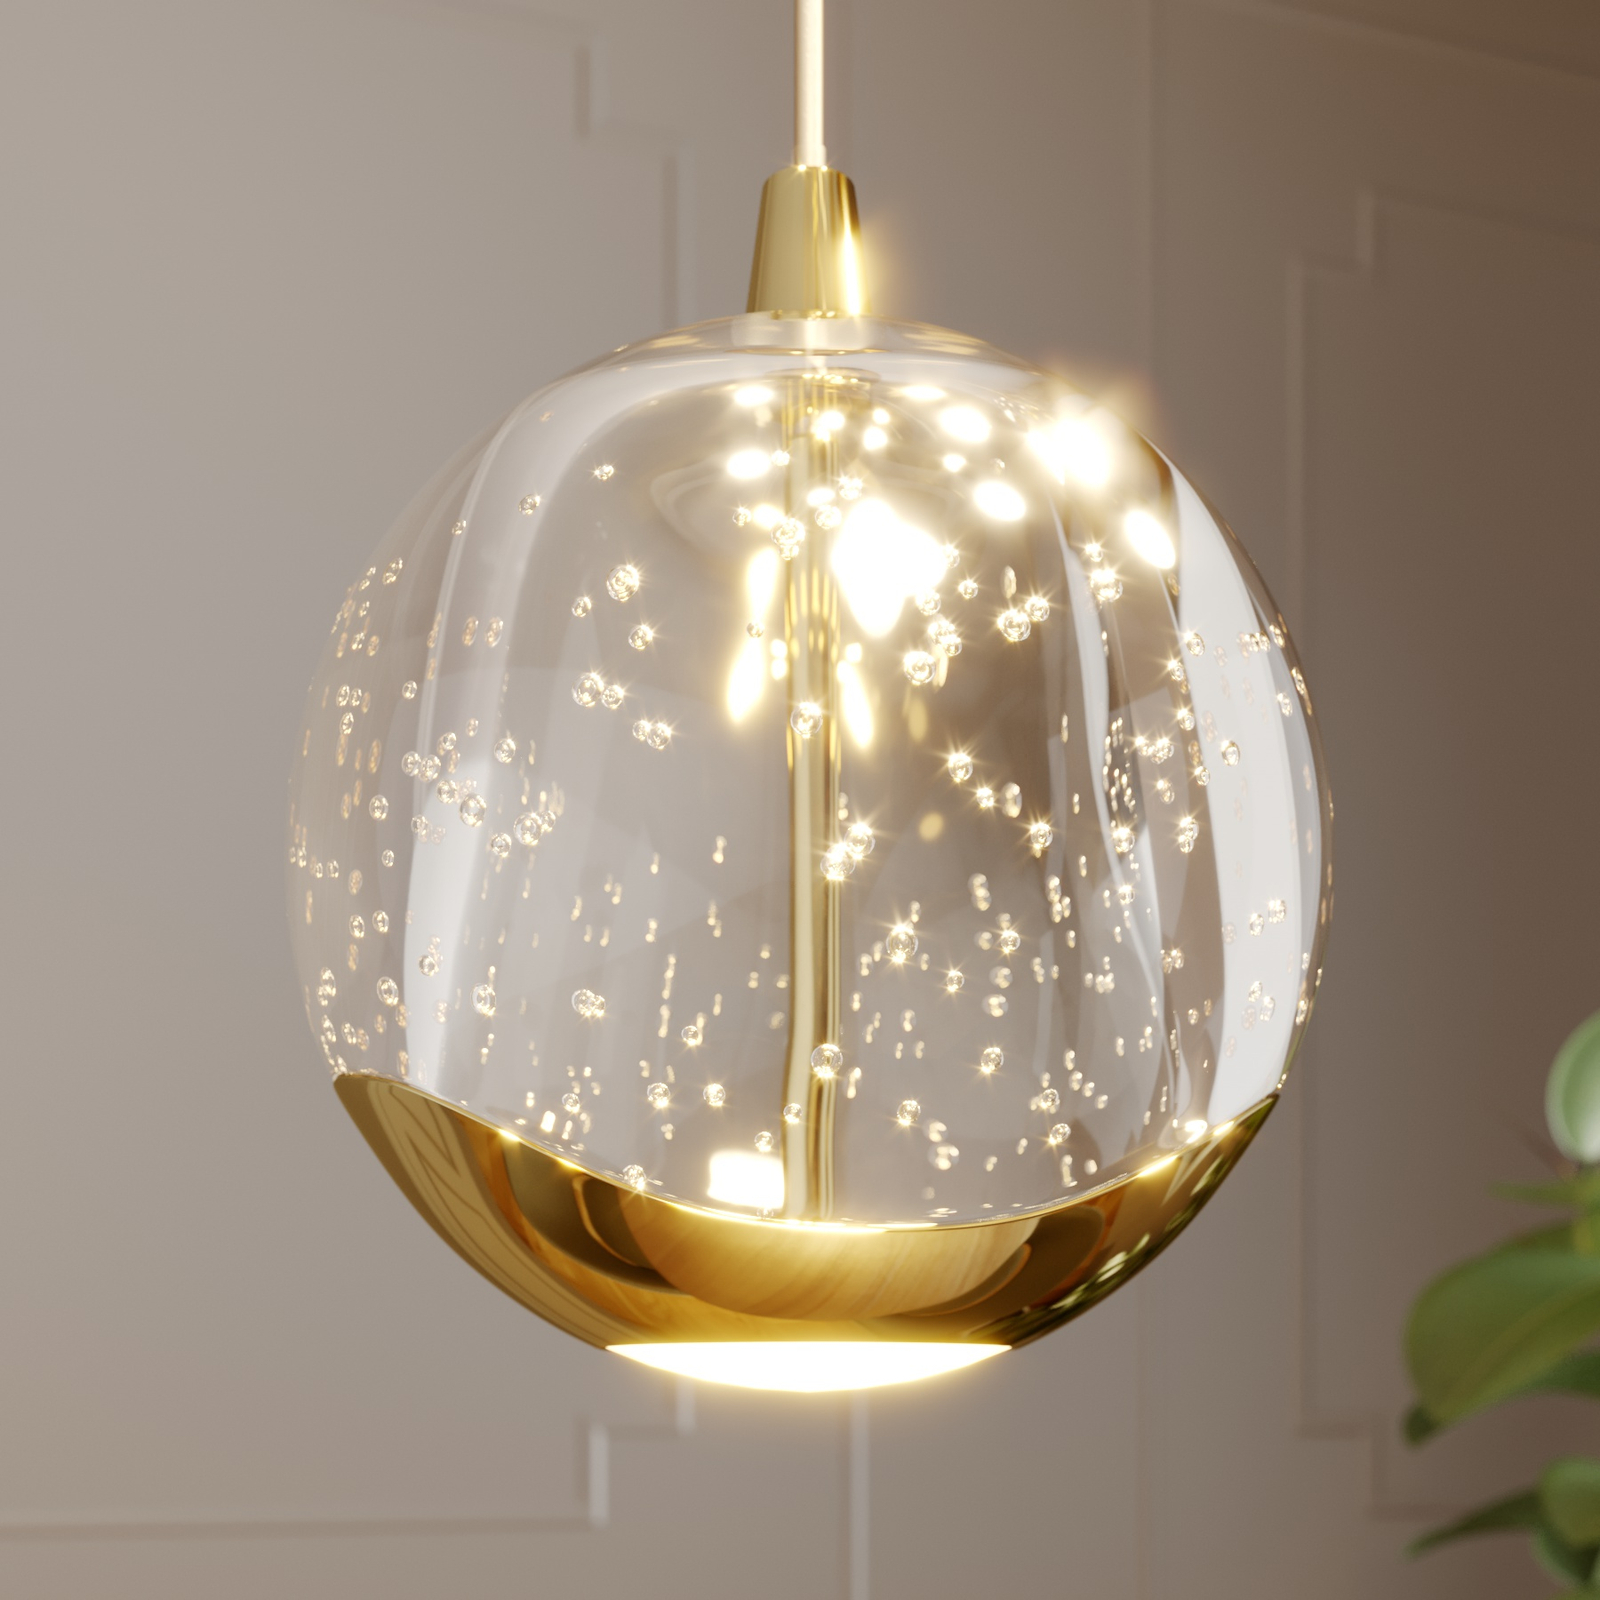 Lucande LED-es függőlámpa Hayley, 9-es, arany színű, üveg, aranyszínű